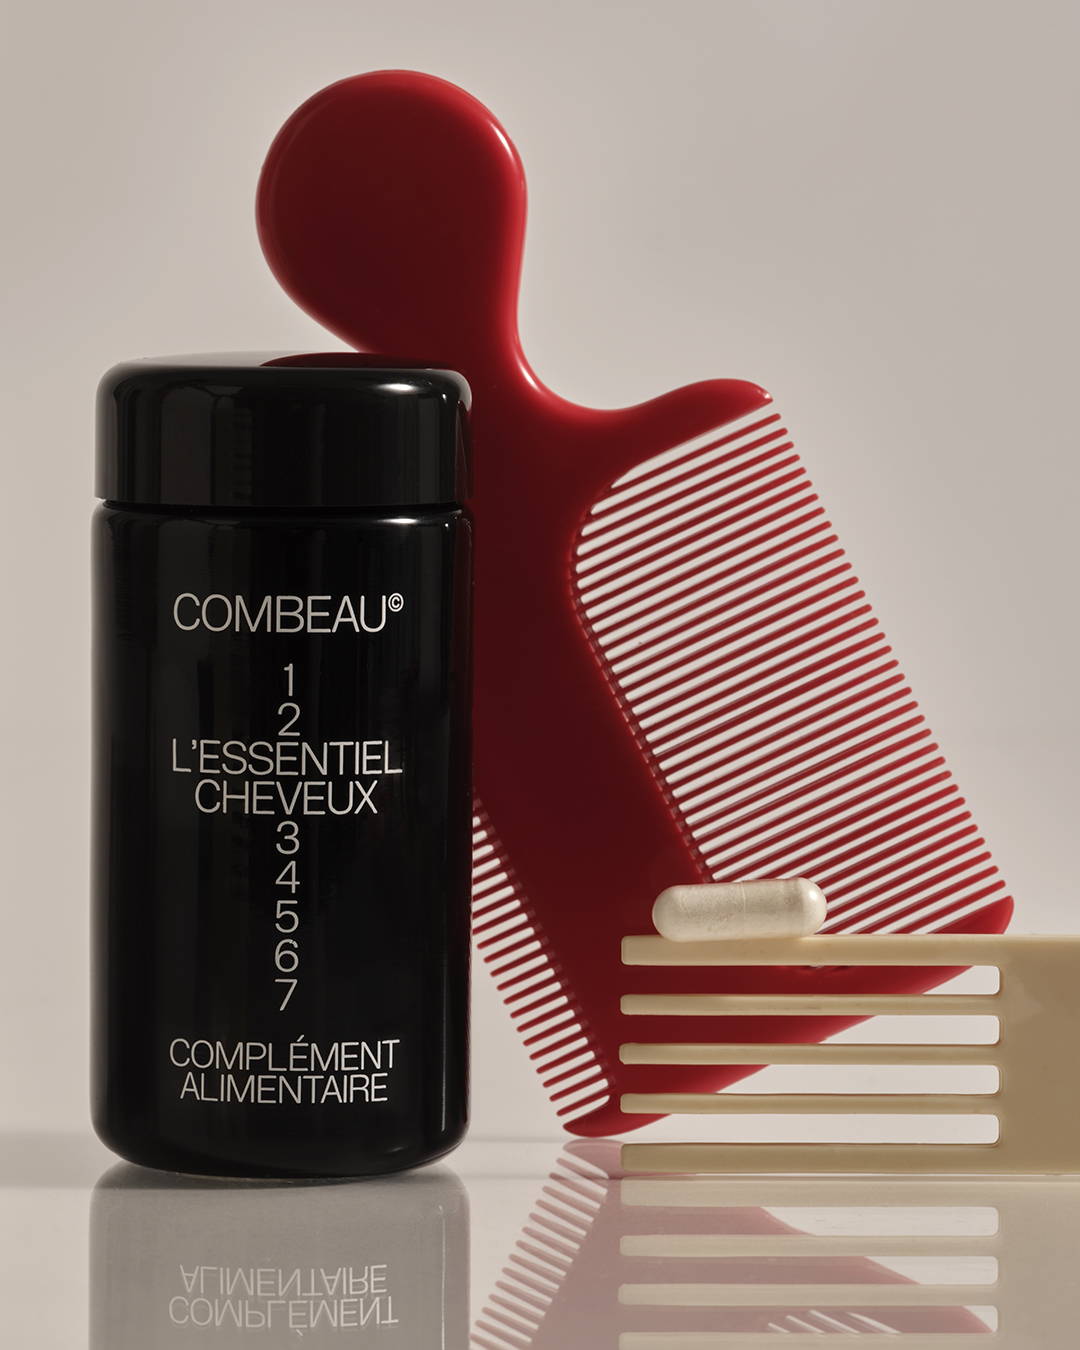 #seo: combeau hair essentials